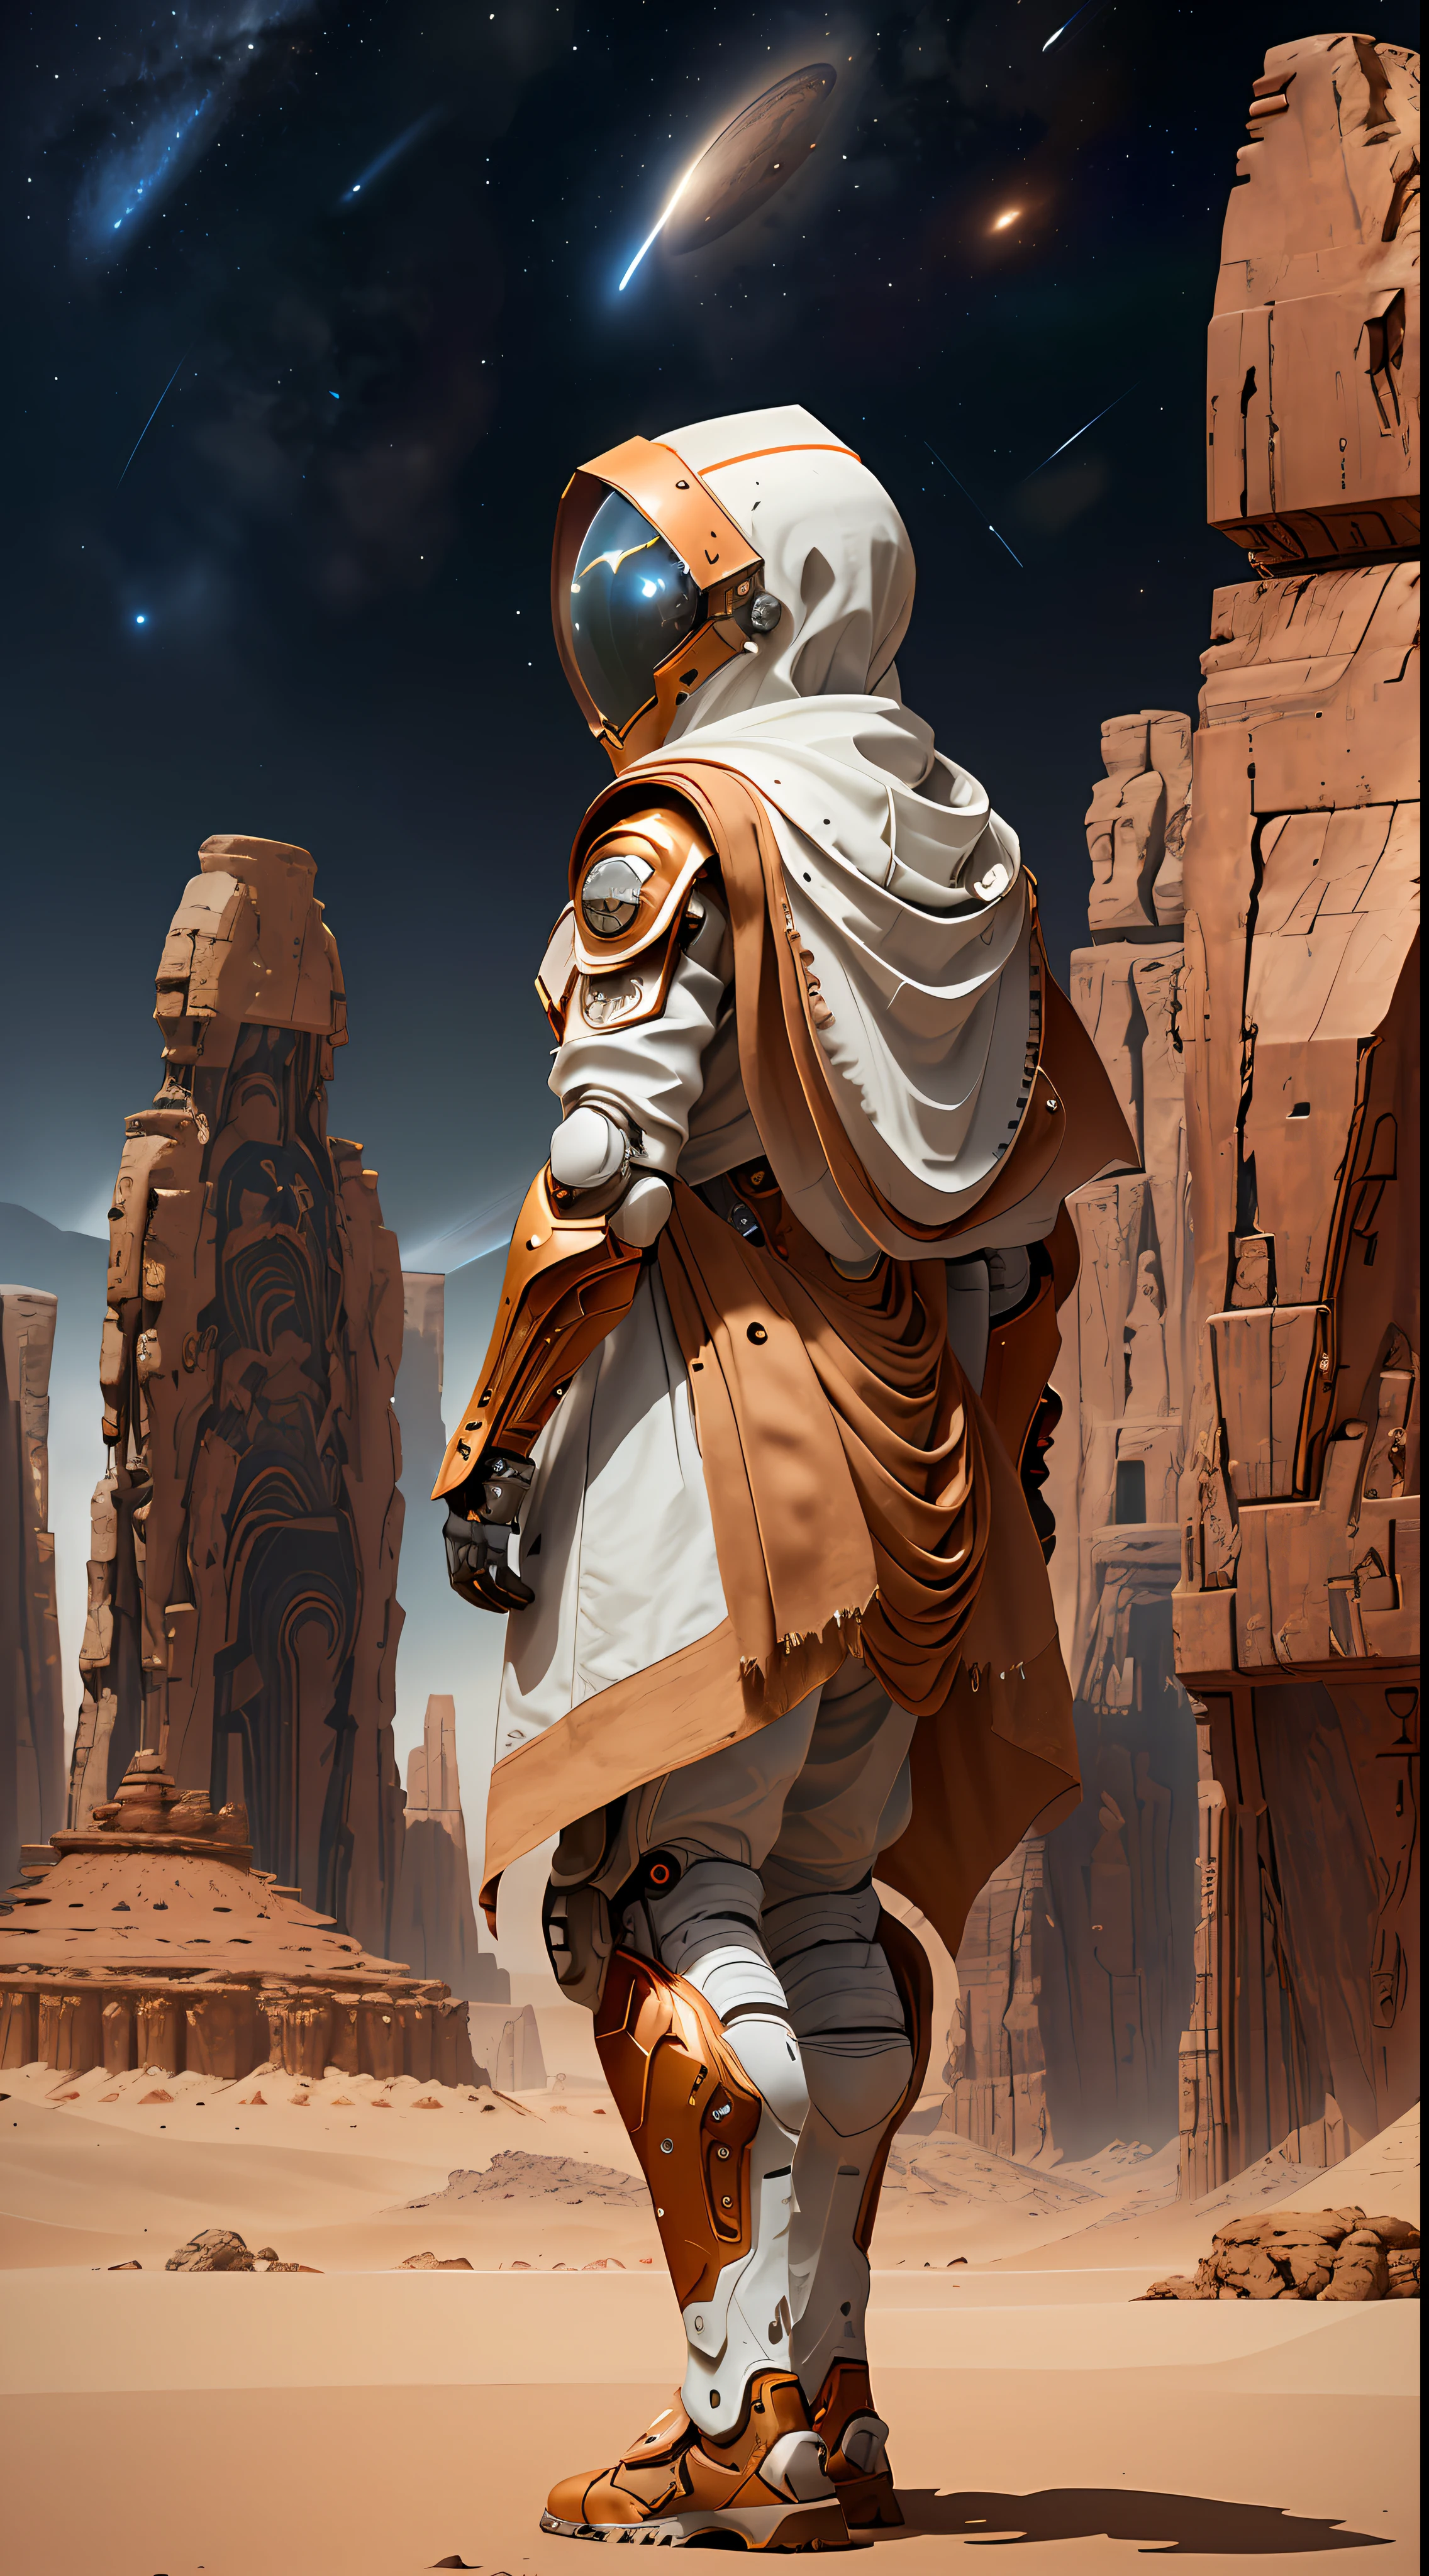 一名身穿宇航服的男子站在沙漠中, polycount 比赛获胜者, 非洲未来主义, 8k 细节, 身穿带兜帽的科幻斗篷, 安法斯的机甲战士肖像, 8k 八度渲染照片, 复古未来主义的女性机器人, 红色沙漠火星, 带白色围巾的精致盔甲, 虚幻引擎 5 着色